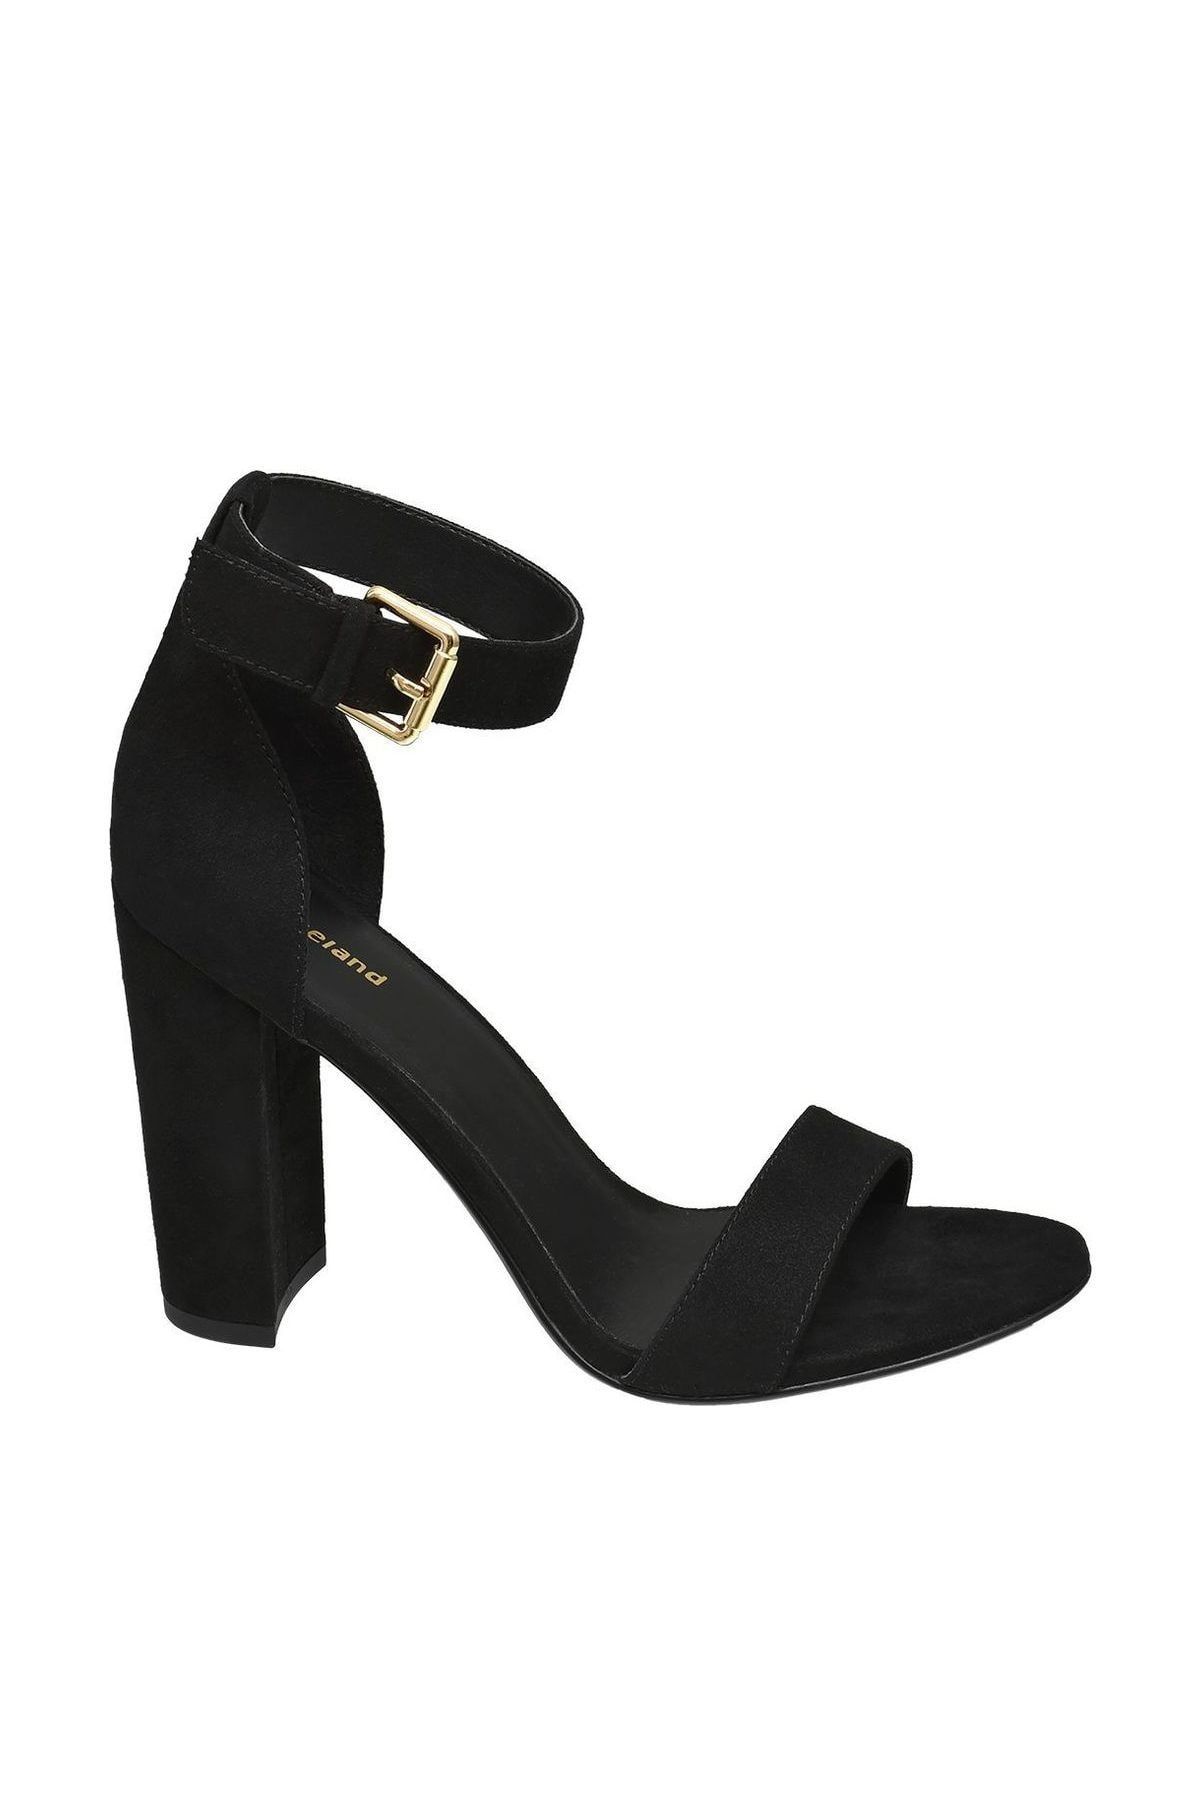 Graceland Deichmann Kadın Siyah Topuklu Ayakkabı